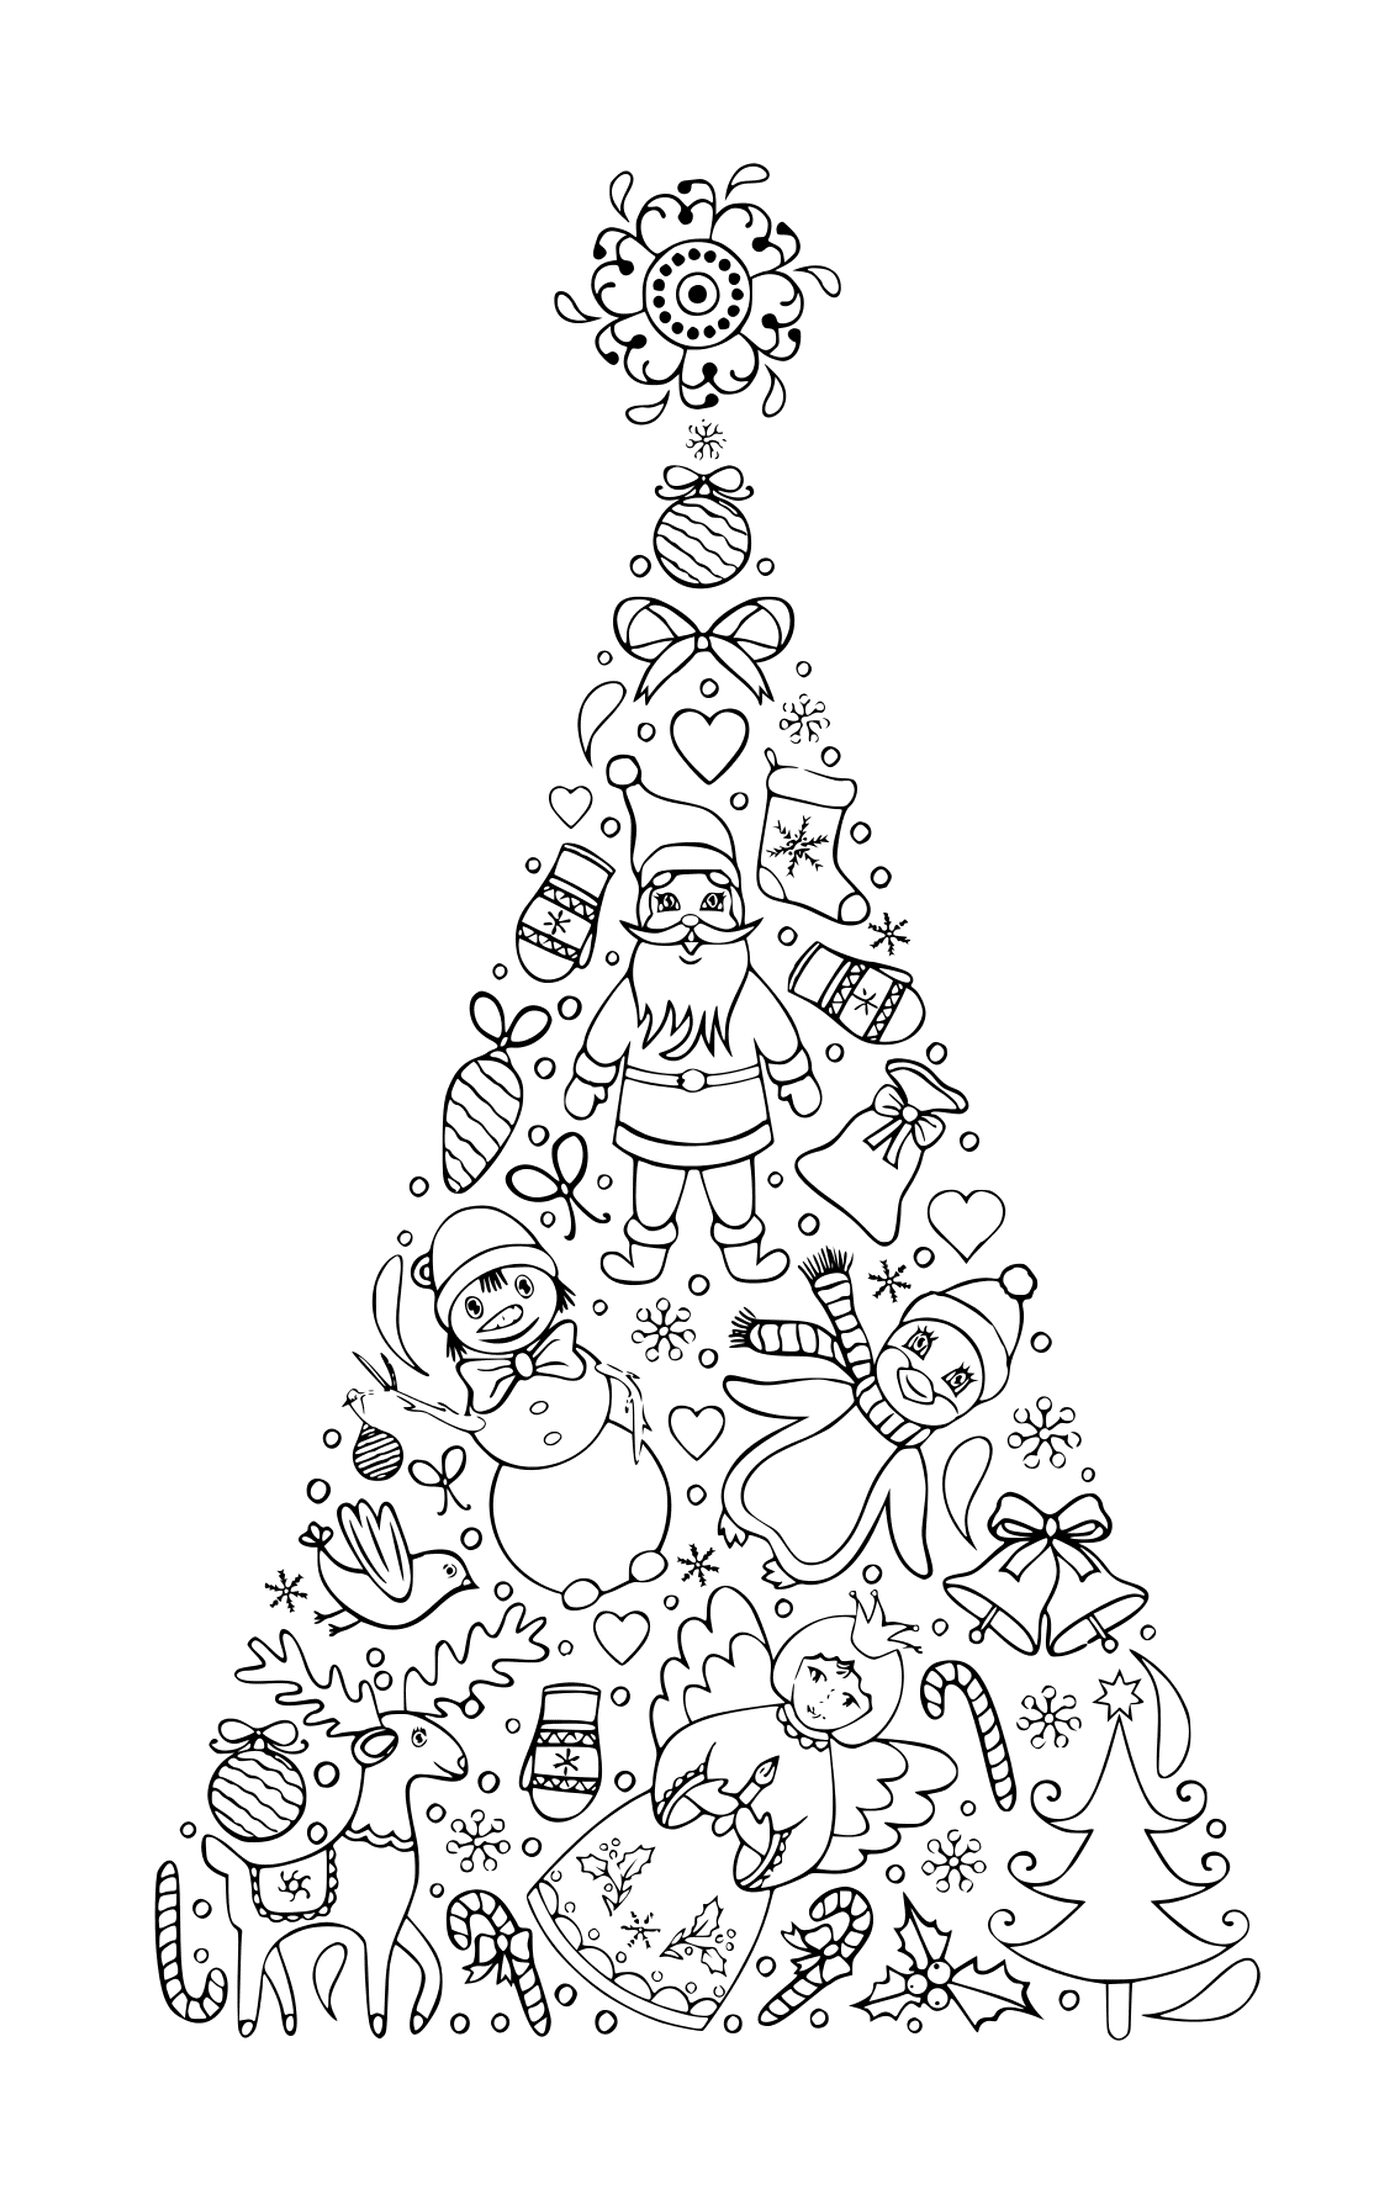  شجرة عيد الميلاد المجيد للأطفال 